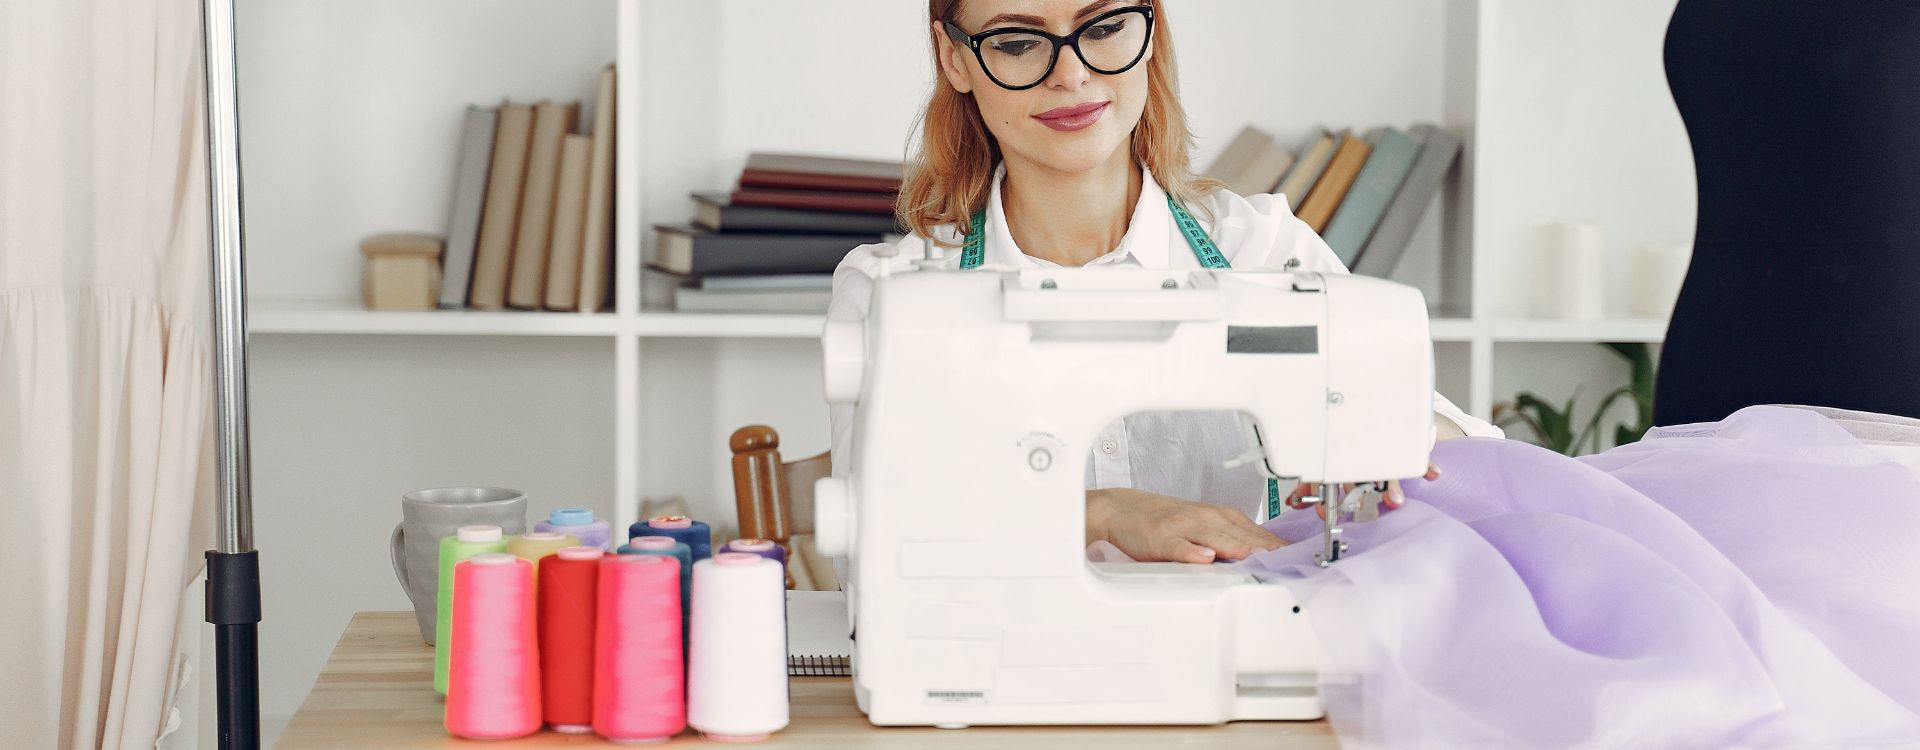 Estas son las mejores telas para iniciarte con la máquina de coser | TejidosOnline.com